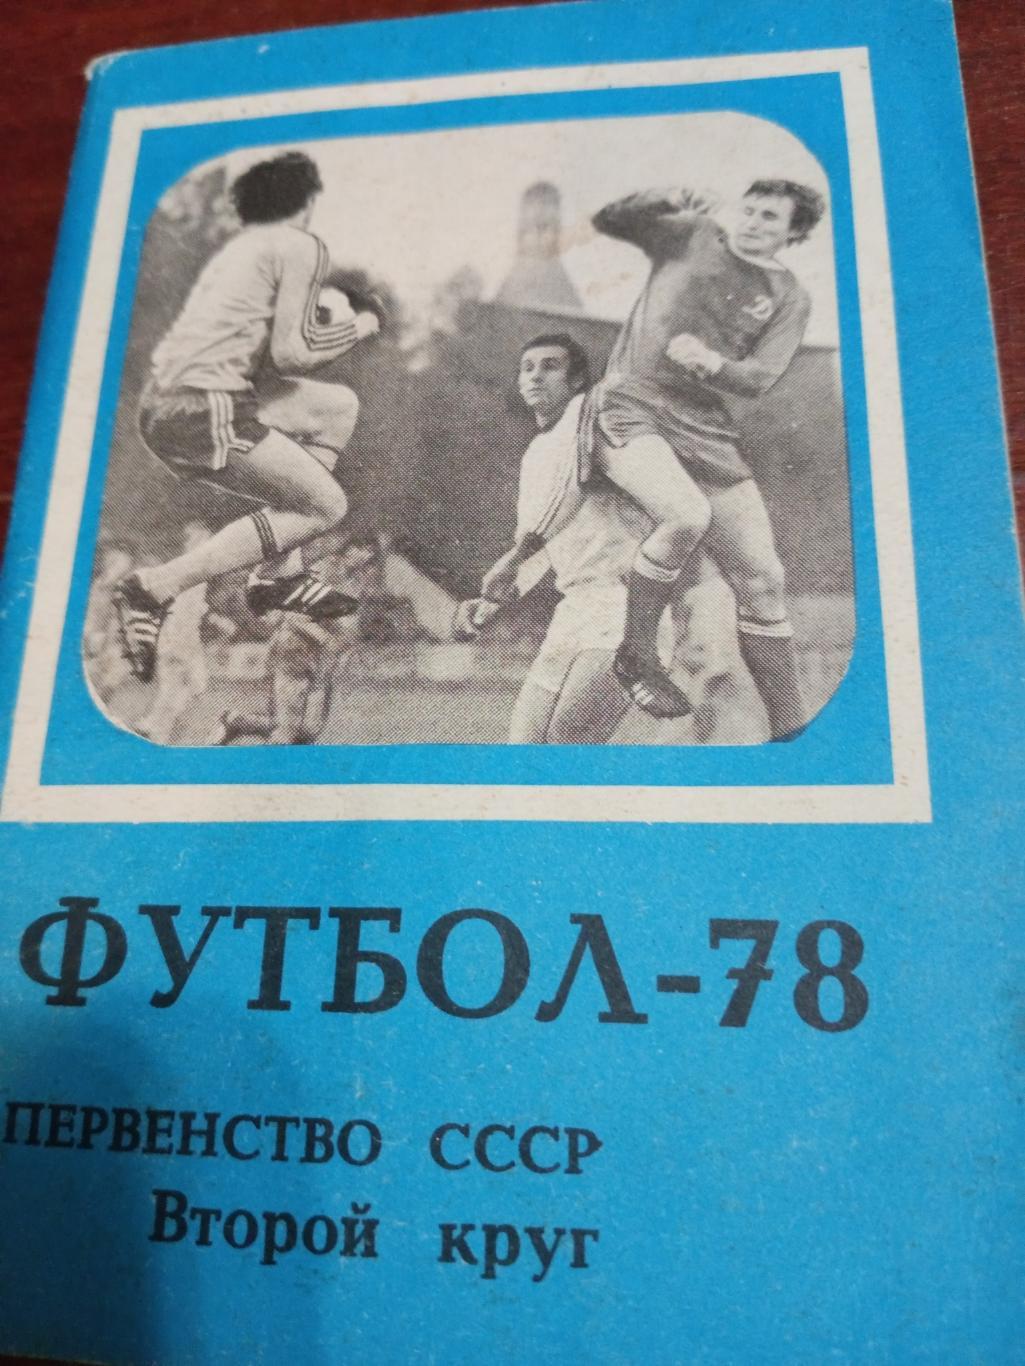 Футбол - 78, второй круг. Московская правда